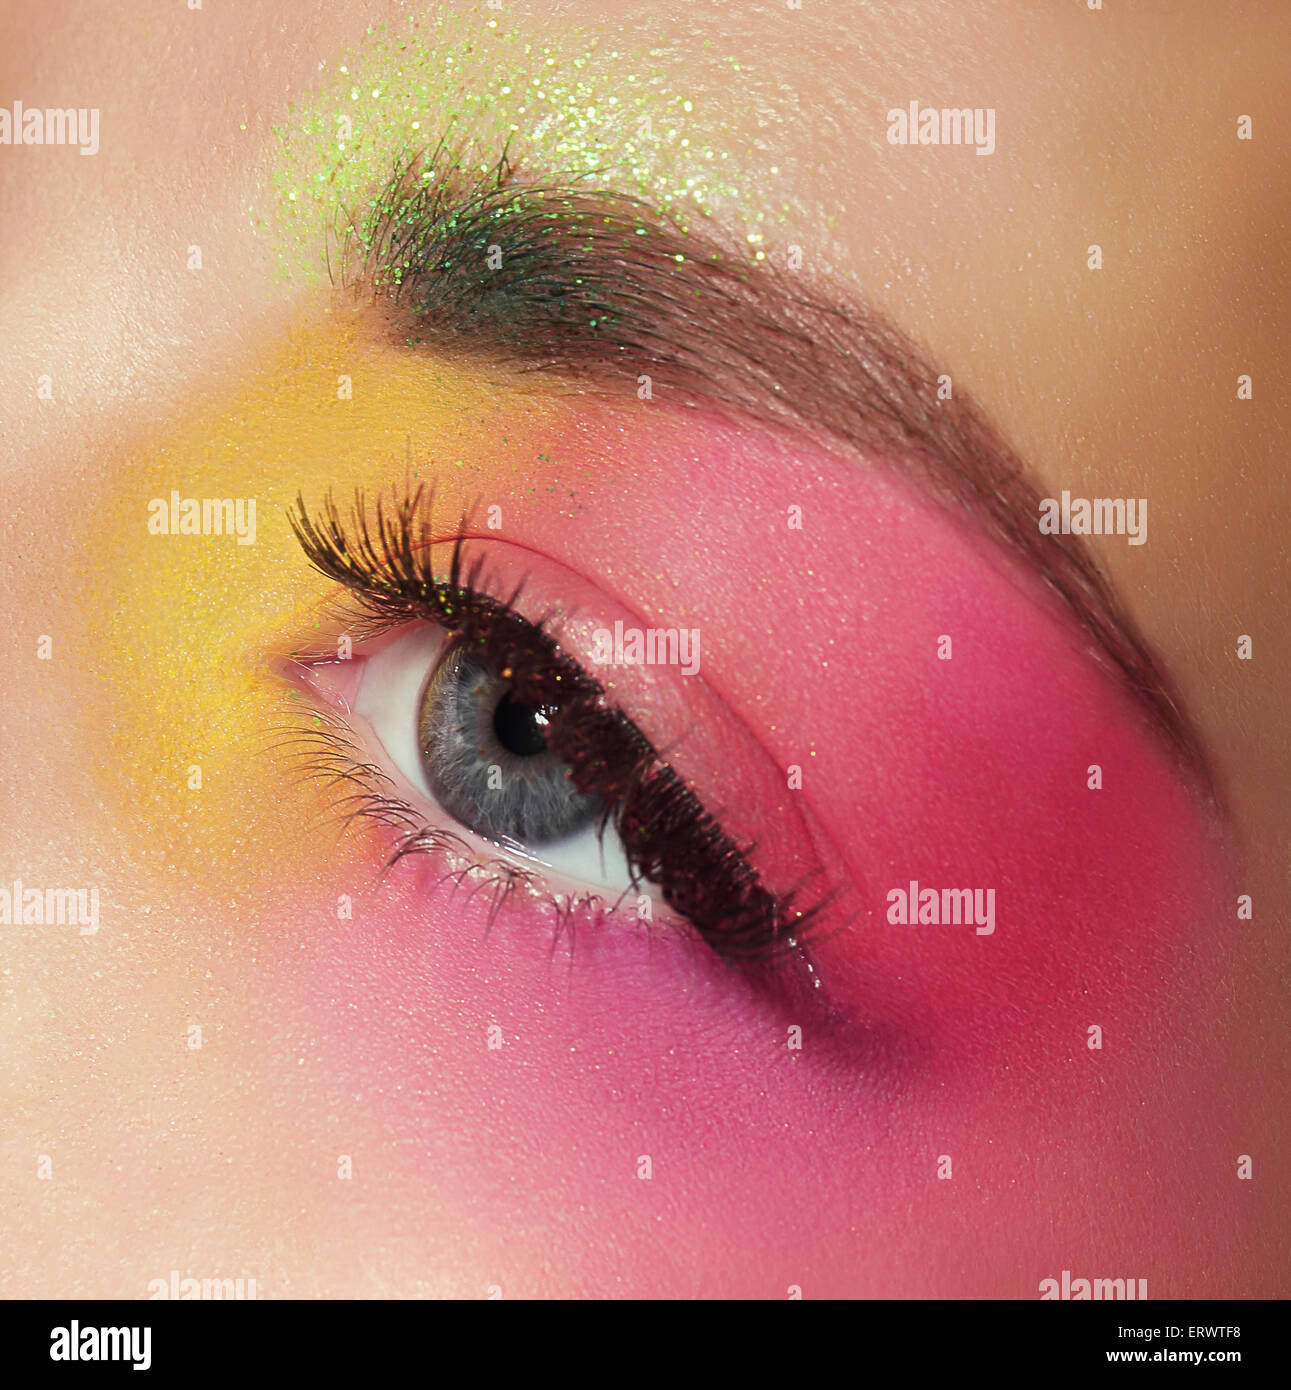 Maquillage coloré Banque de photographies et d'images à haute résolution -  Alamy